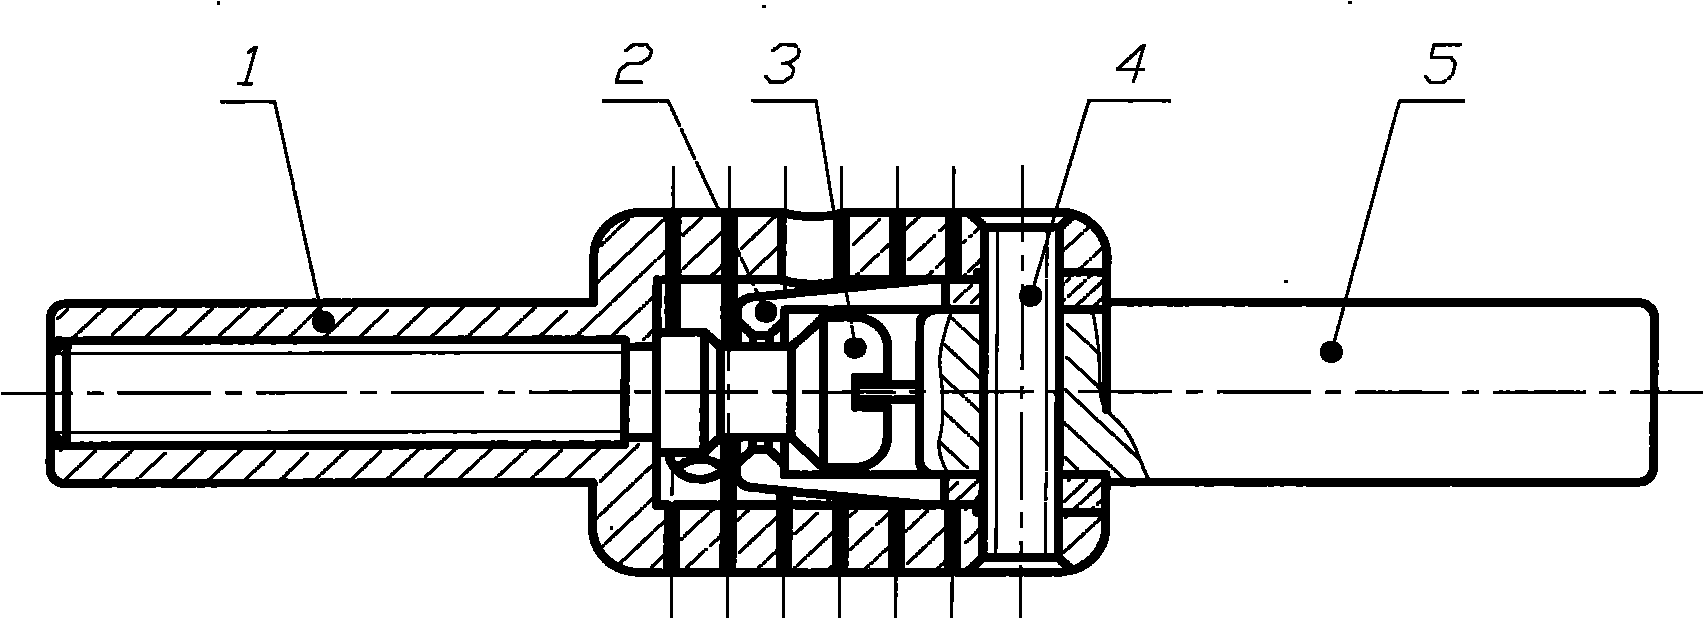 Dynamic non-fusion connector